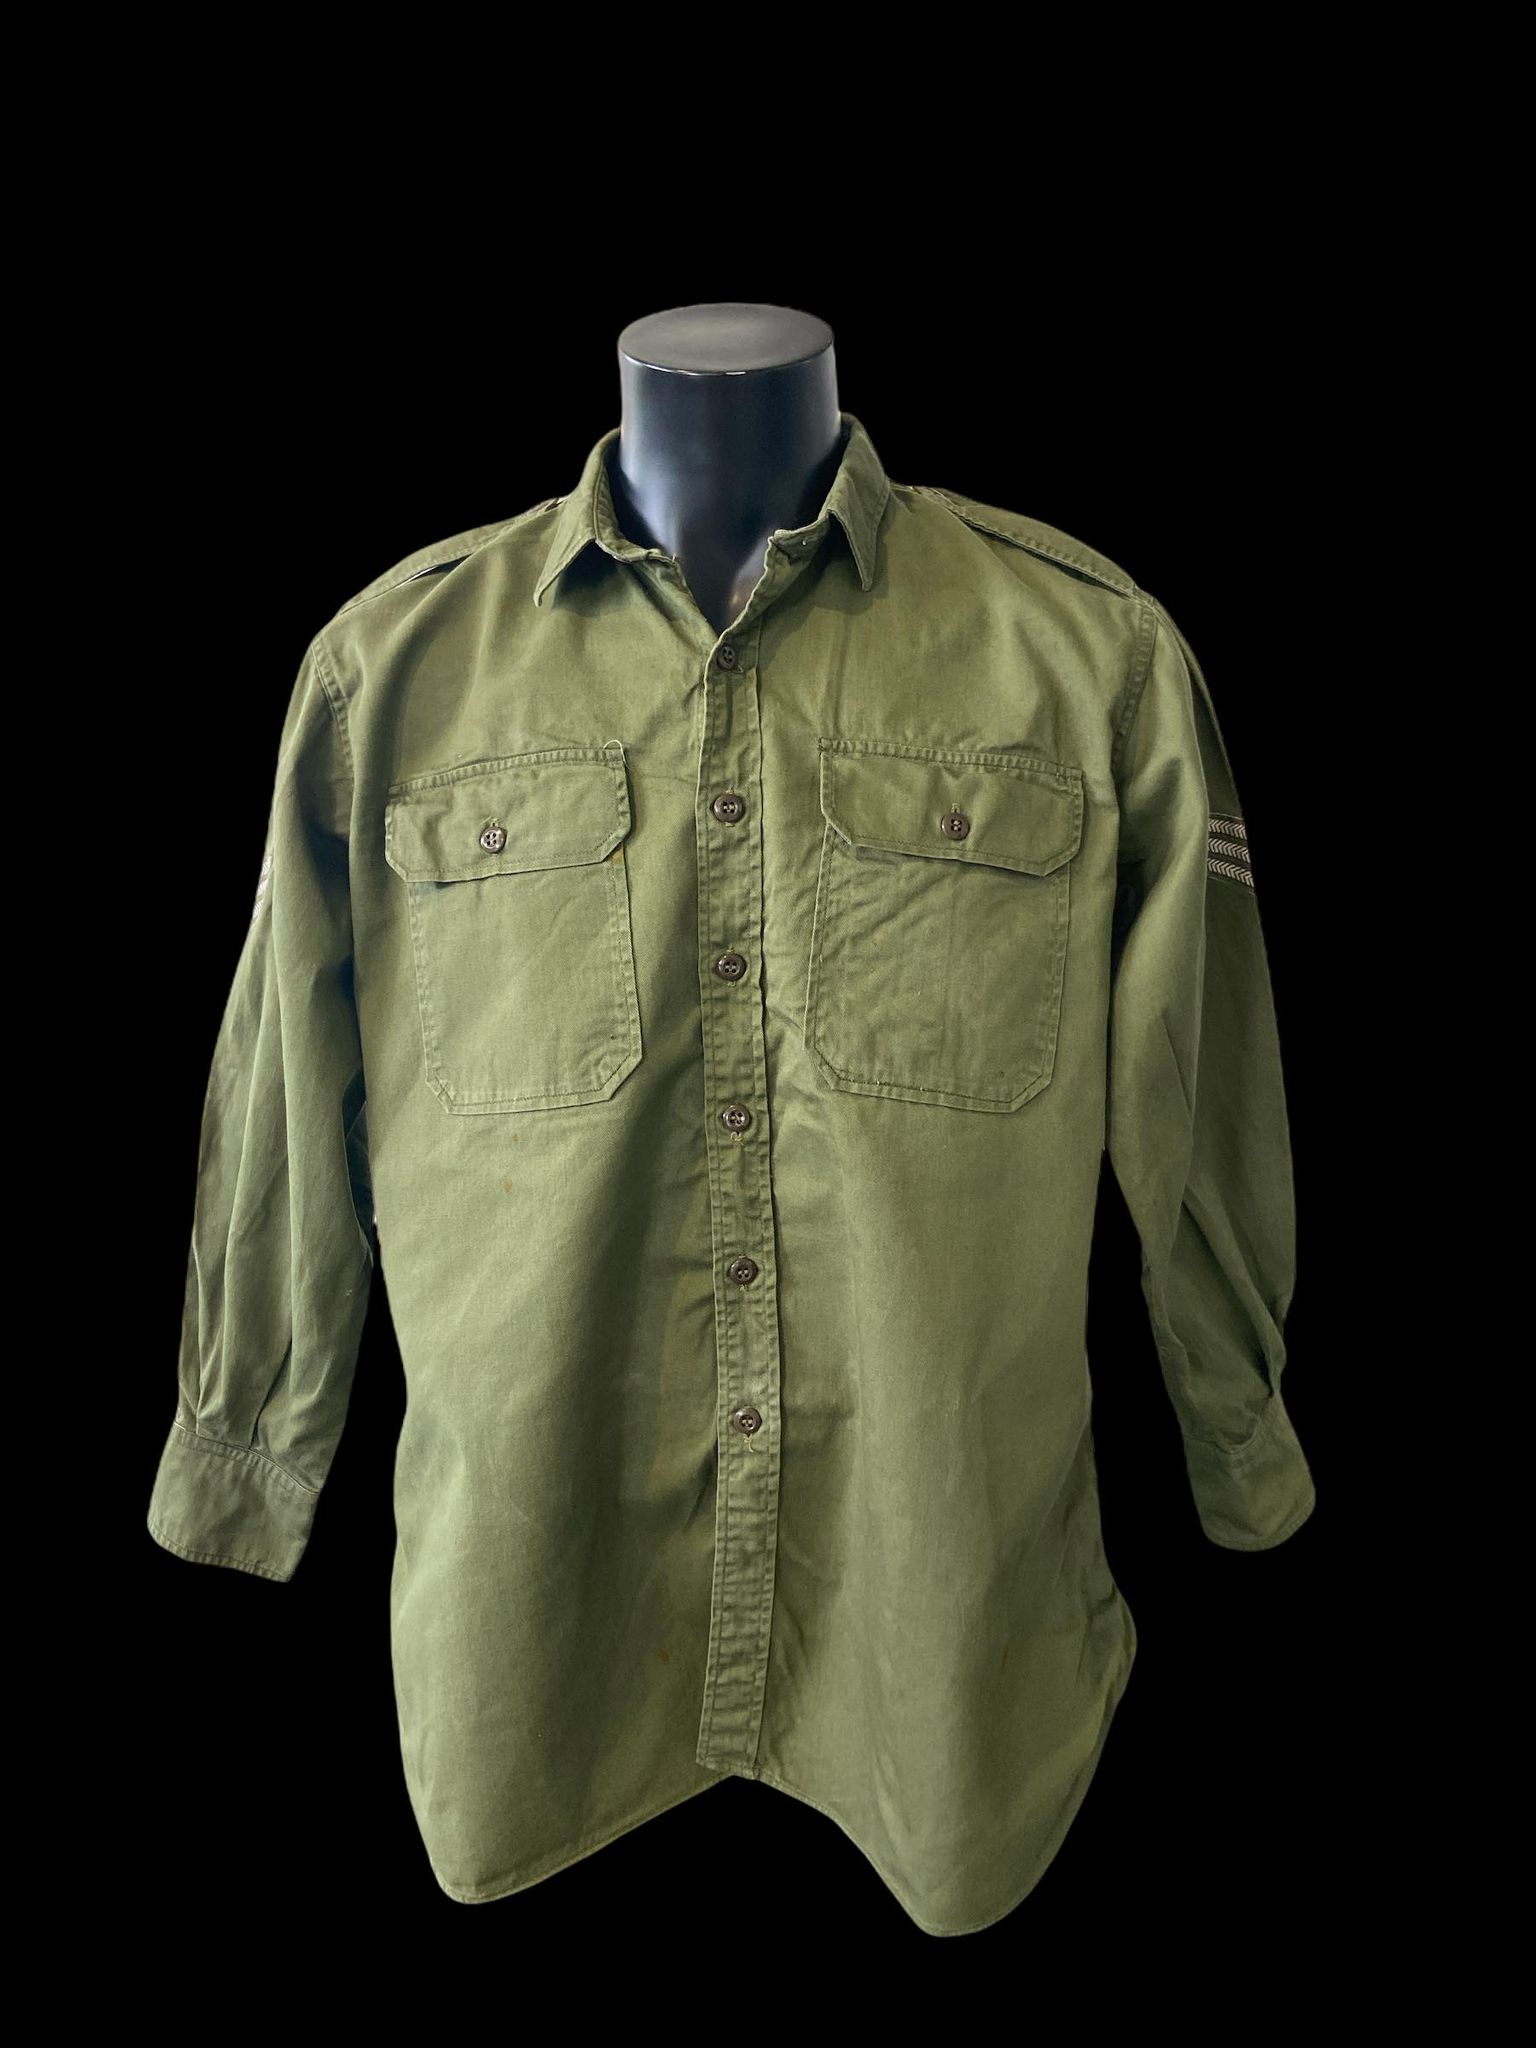 Australian Army Jungle Green Long Sleeve Shirt (Sergeant) - Vietnam War ...